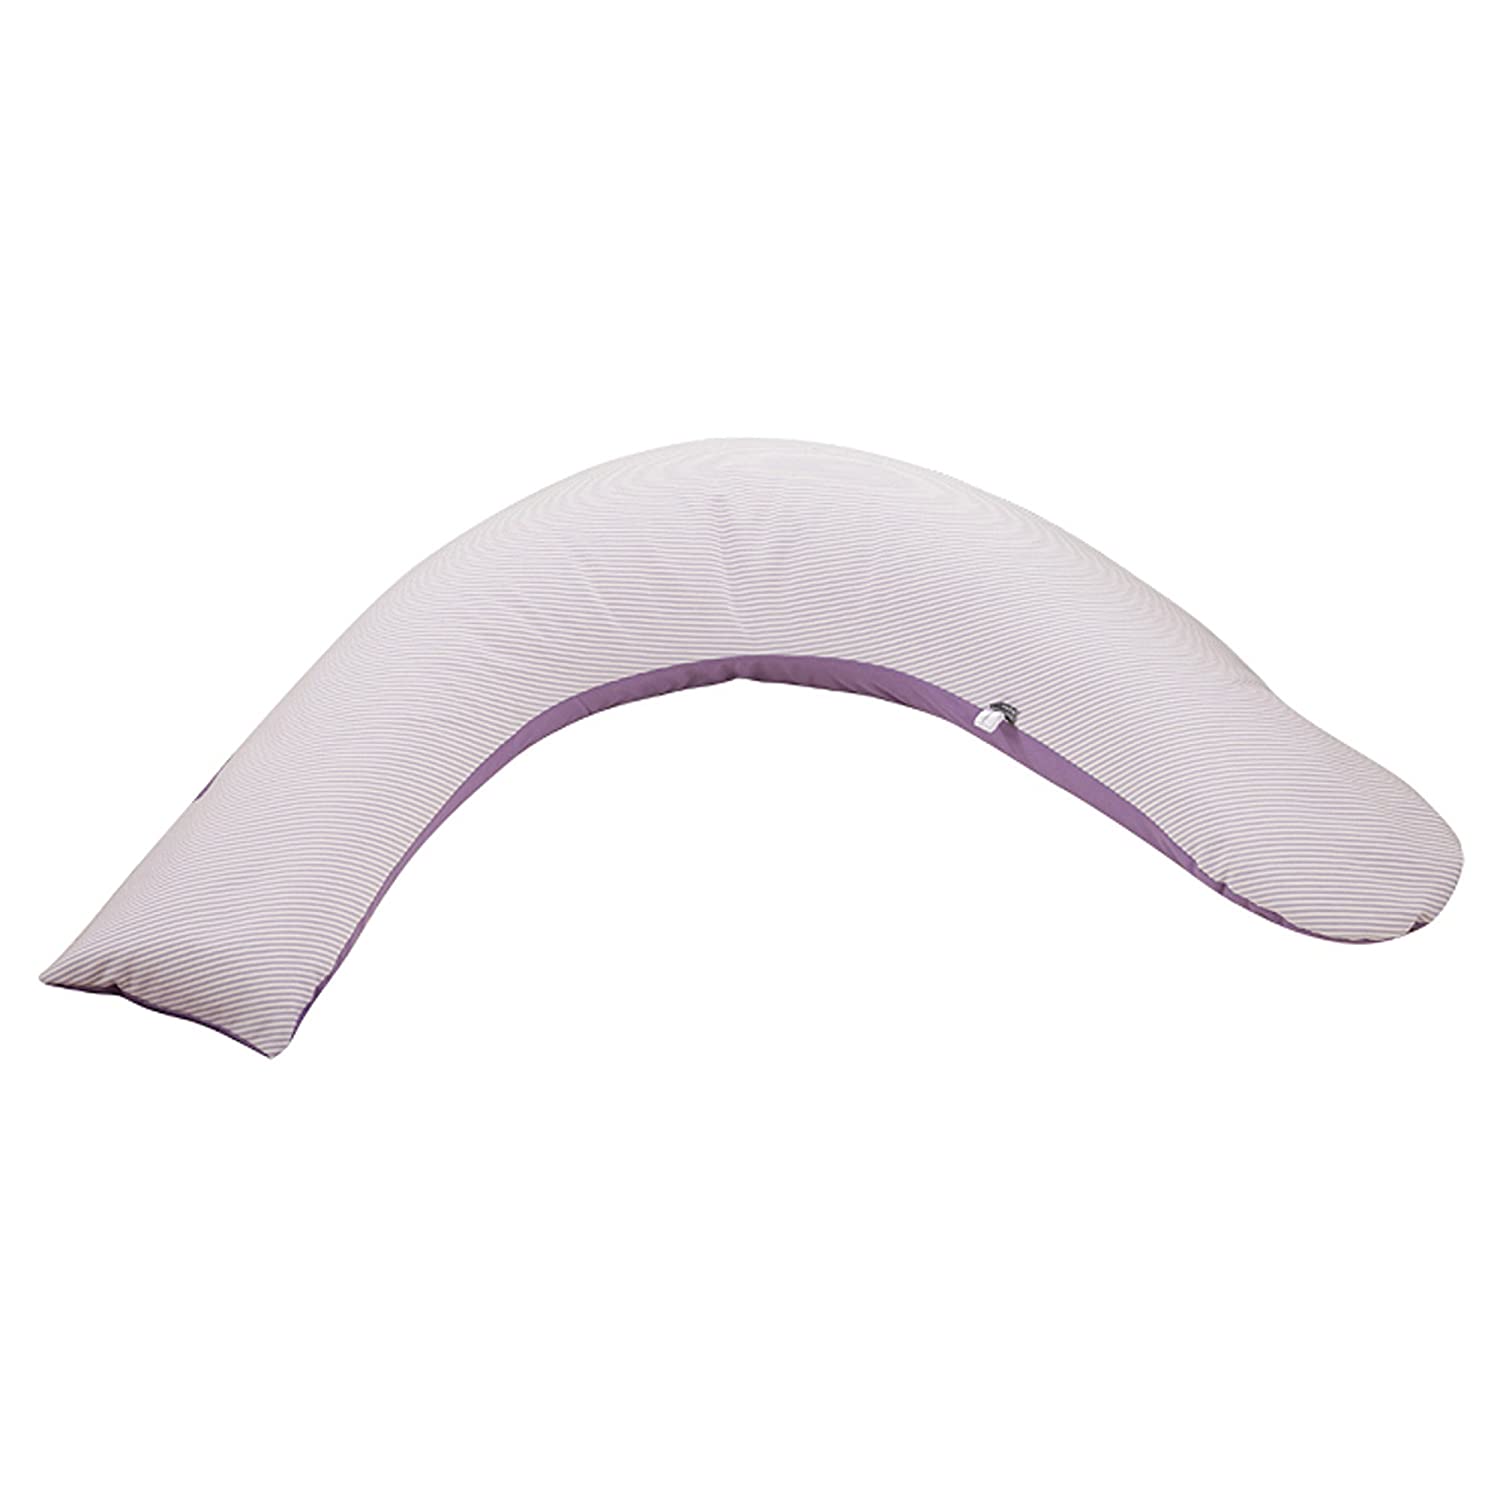 Christiane Wegner 0350 01 545 Nursing Pillow Lene 190 cm Lilas Design